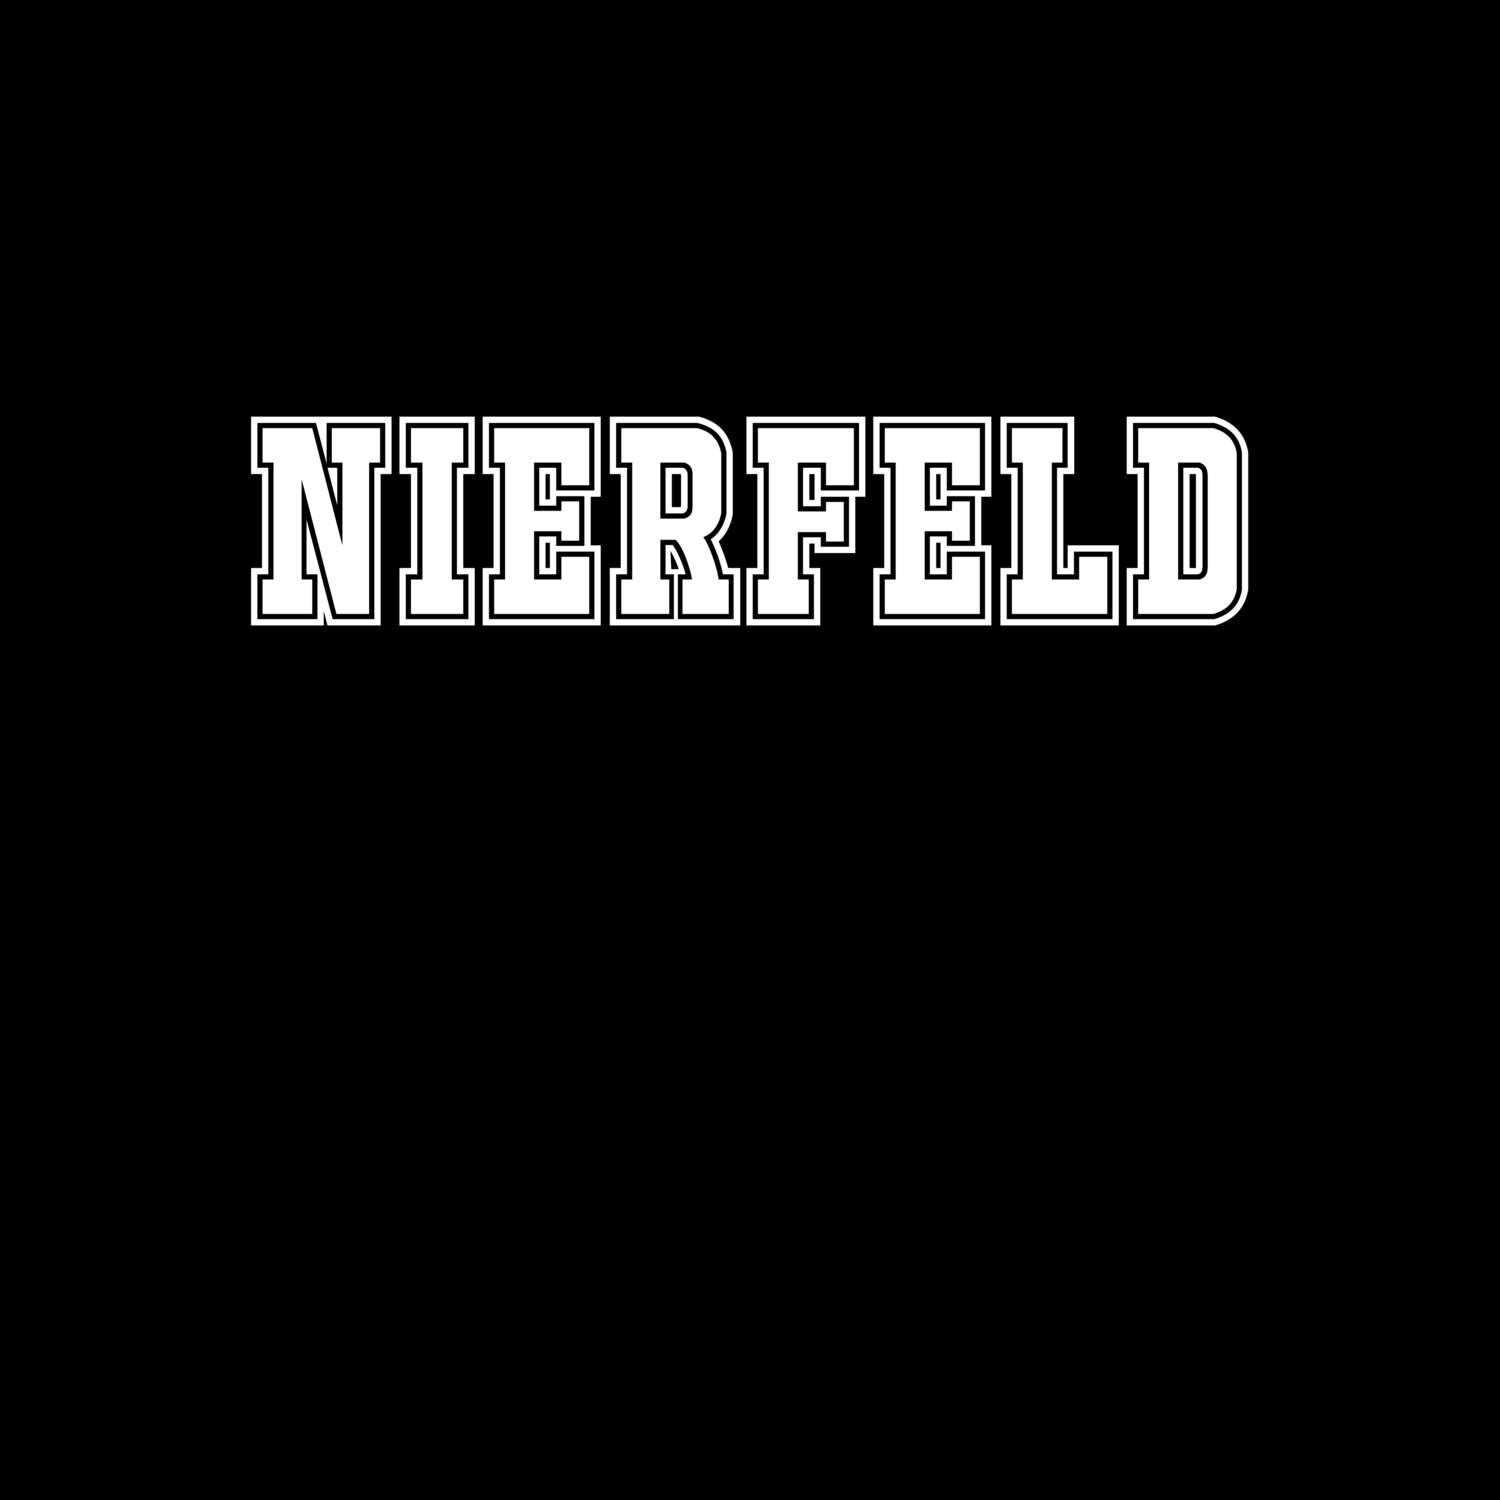 Nierfeld T-Shirt »Classic«